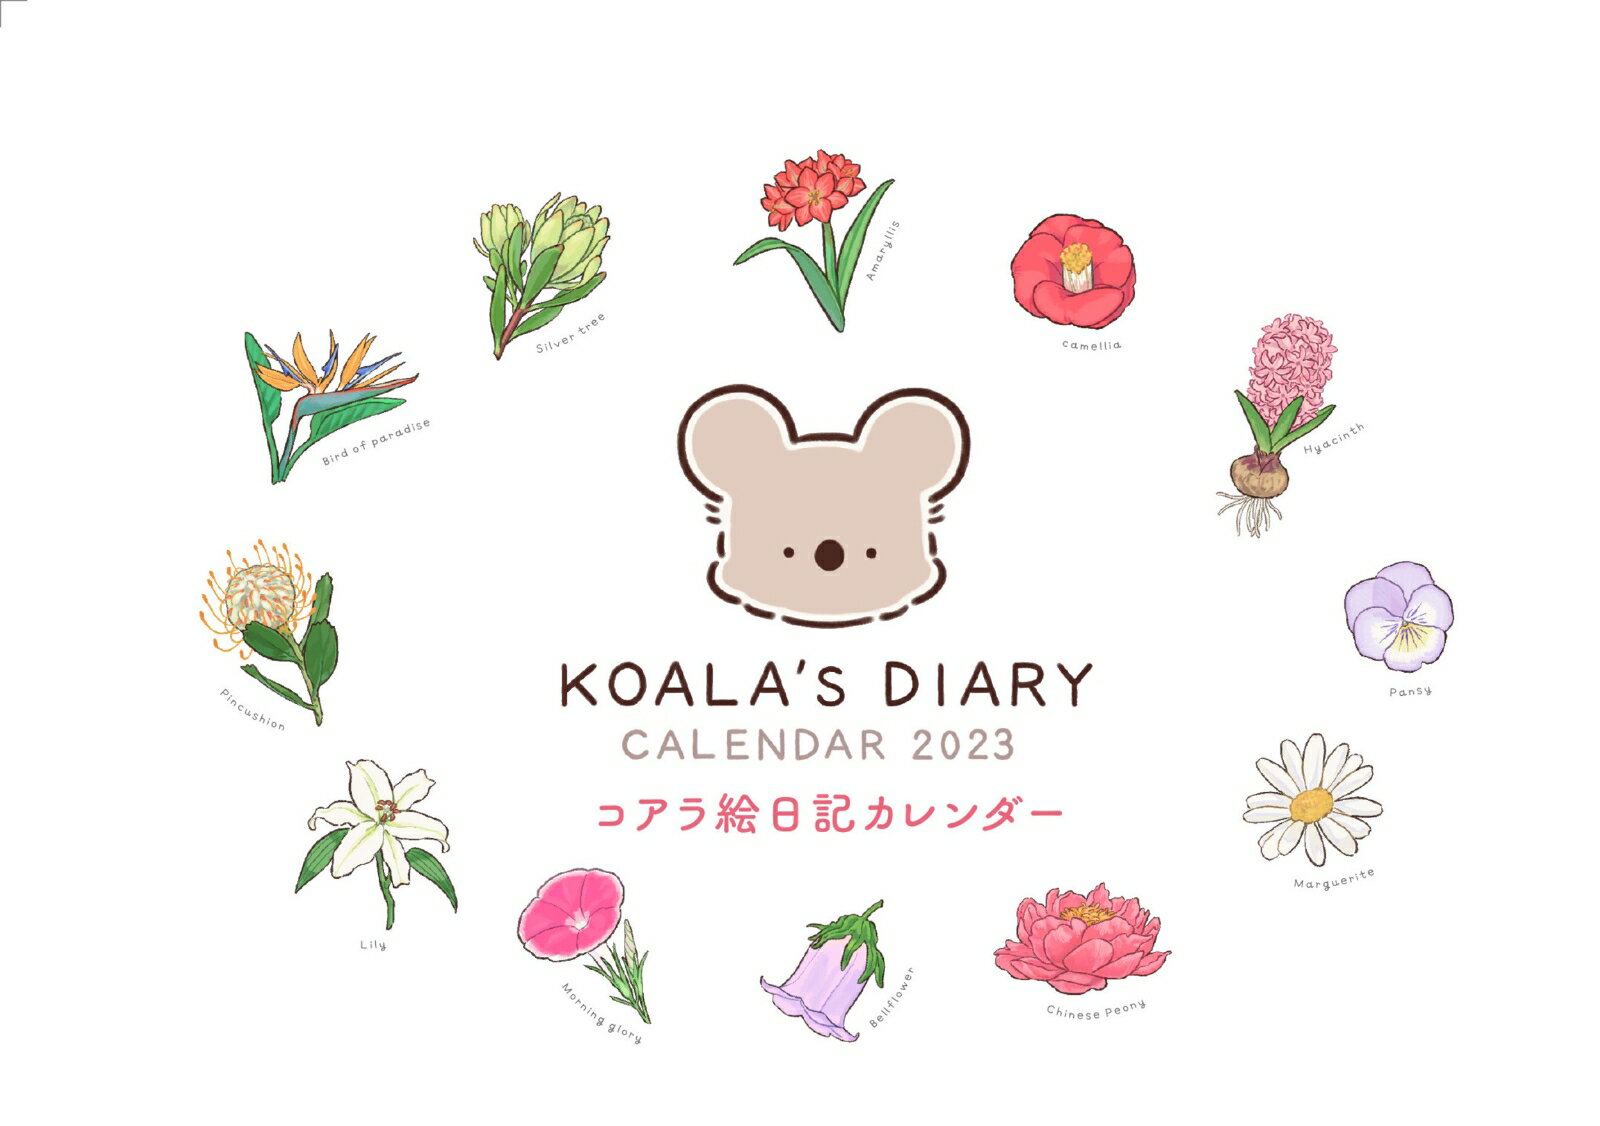 KOALA'S DIARY CALENDAR 2023 コアラ絵日記カレンダー